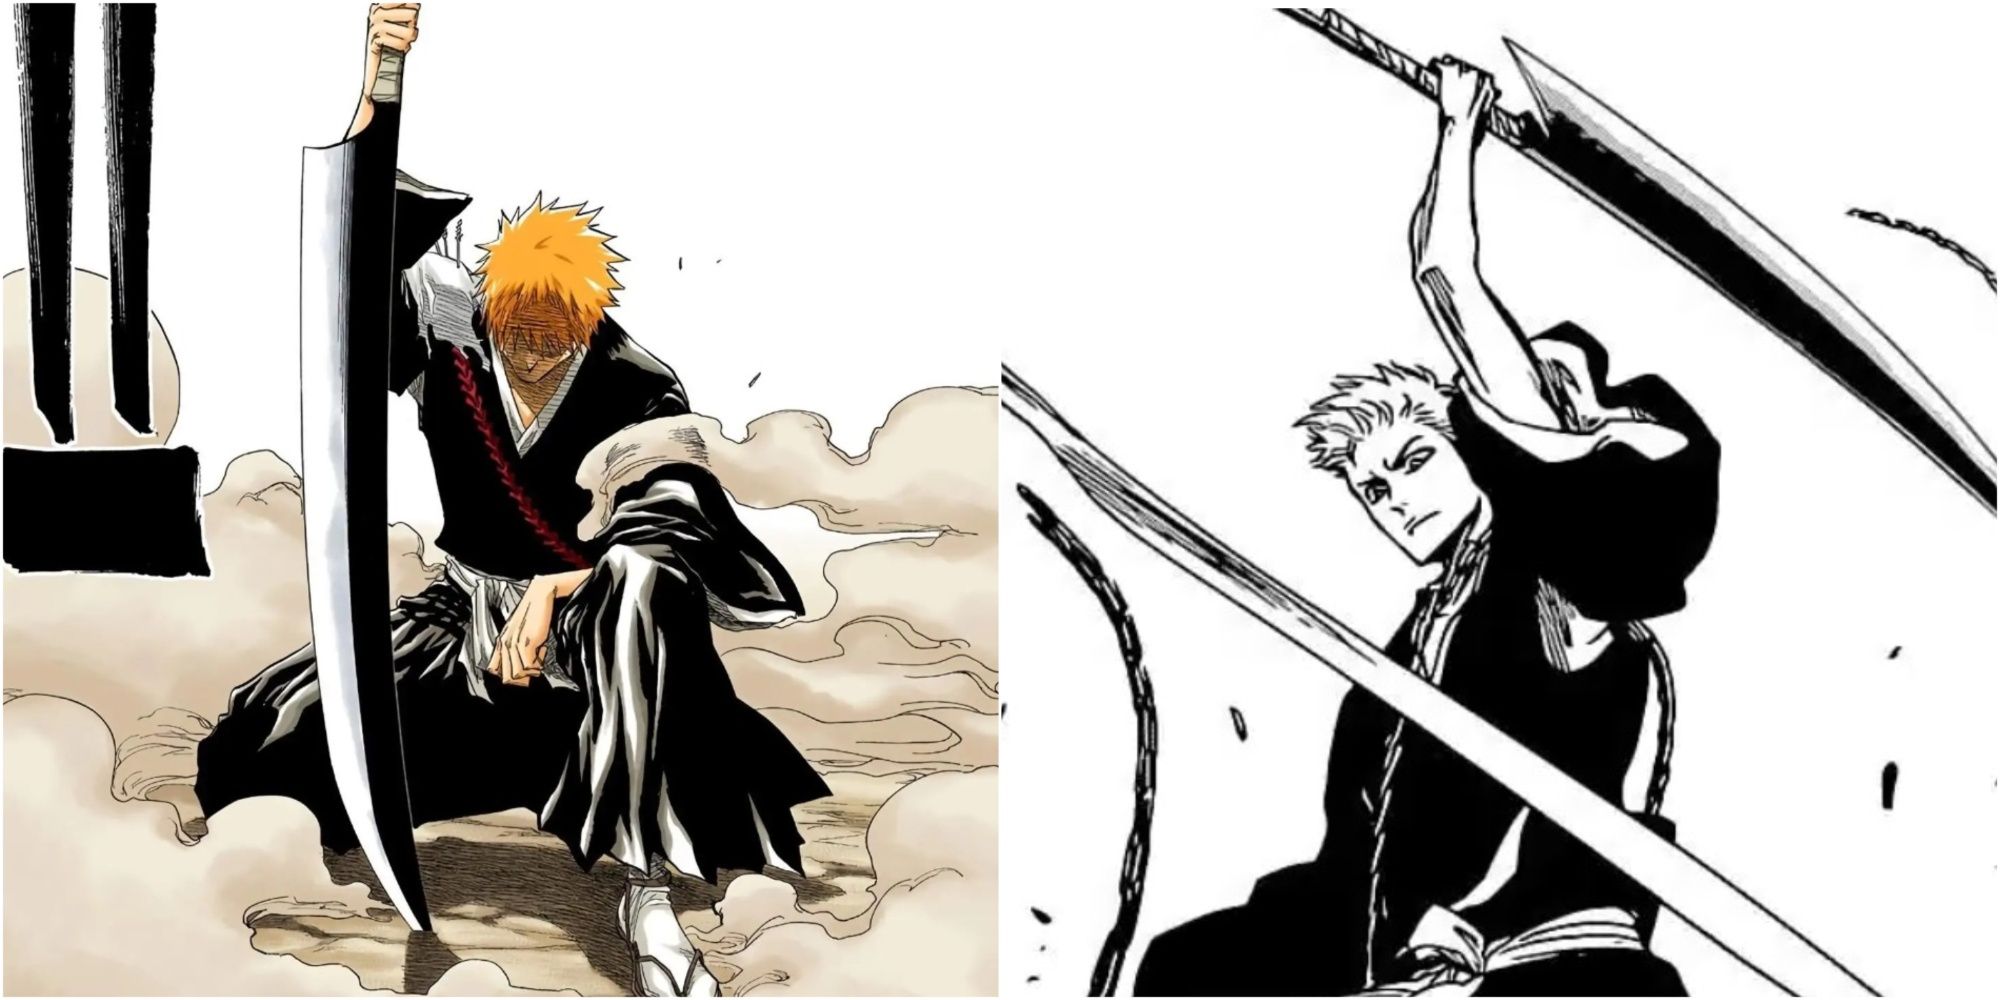 Manga panels showing Ichigo with his Shikai 14 years apart